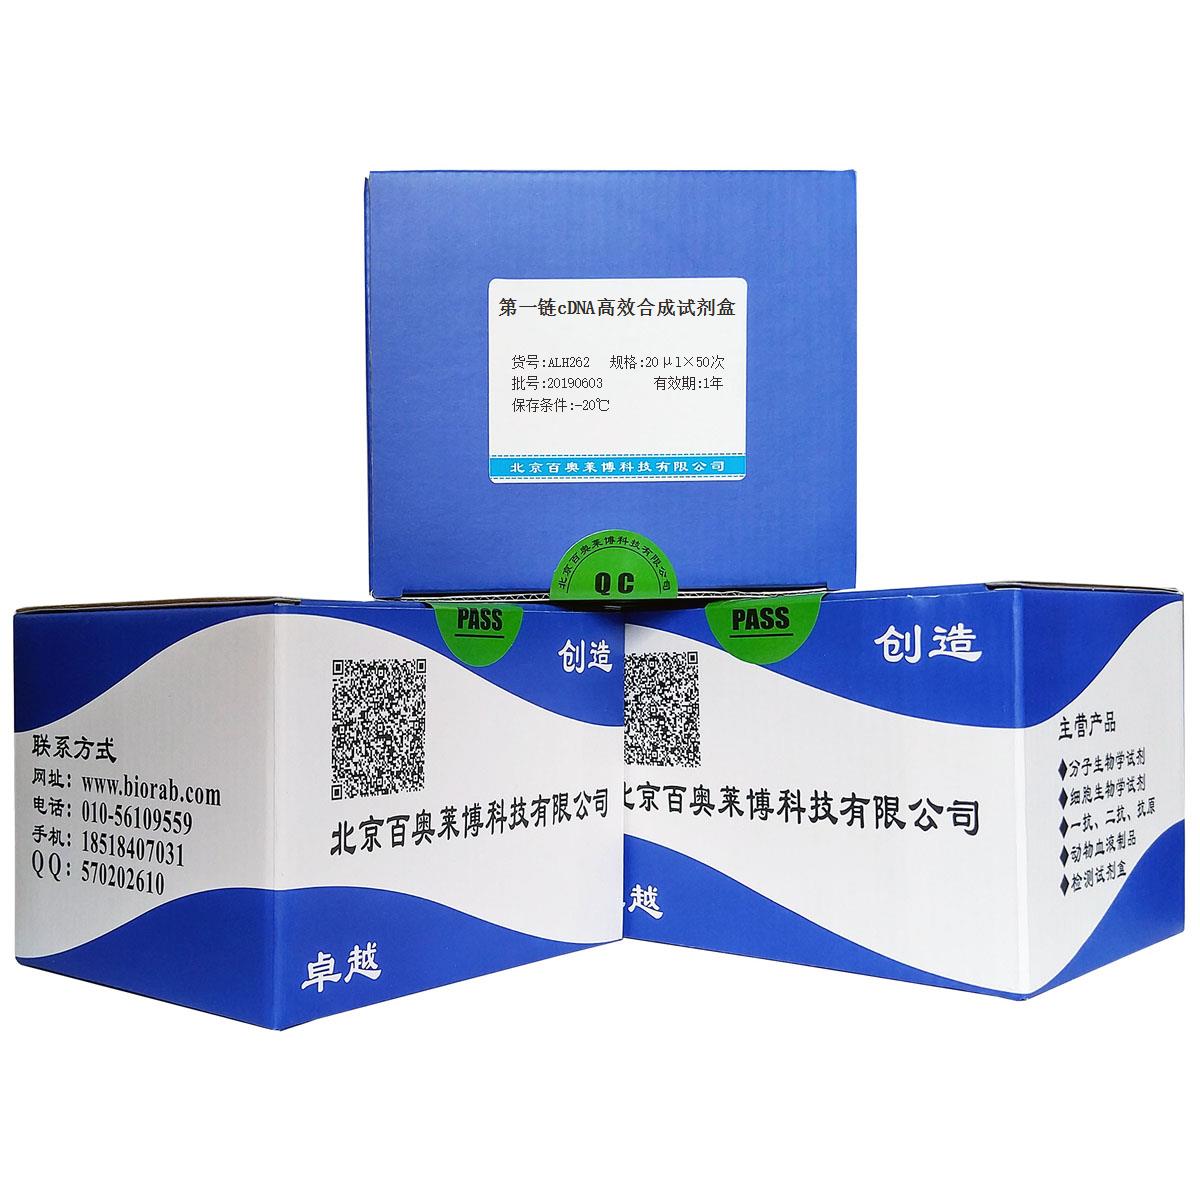 第一链cDNA高效合成试剂盒北京品牌